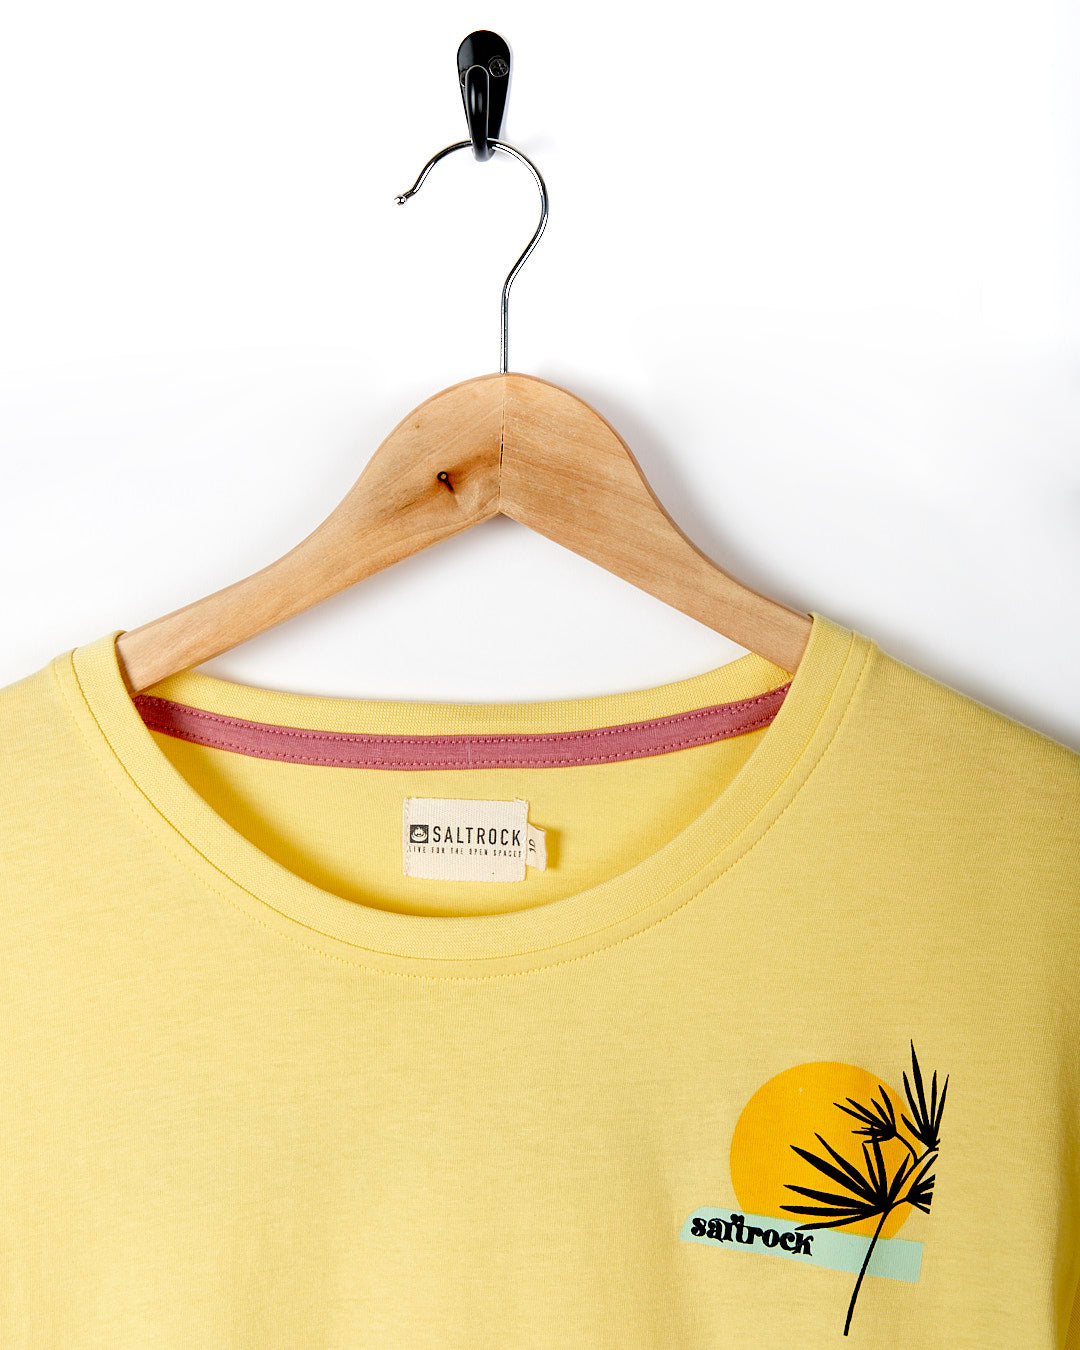 Poster - Womens Short Sleeve T-Shirt - Light Yellow